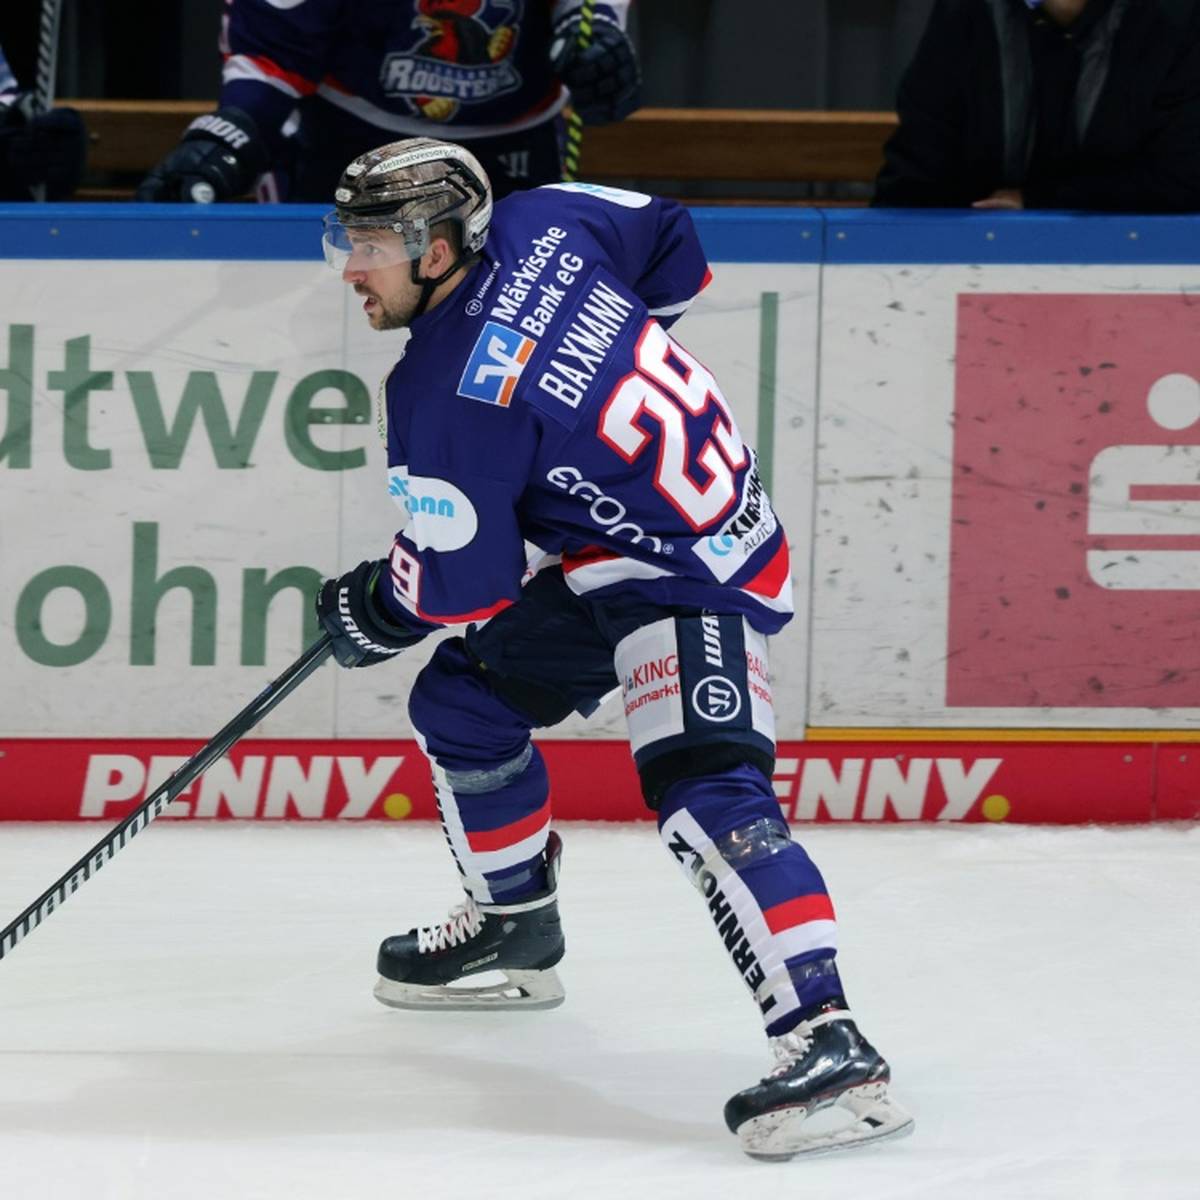 Eishockey-Profi Jens Baxmann muss seine erfolgreiche Karriere wegen einer Augenverletzung beenden.